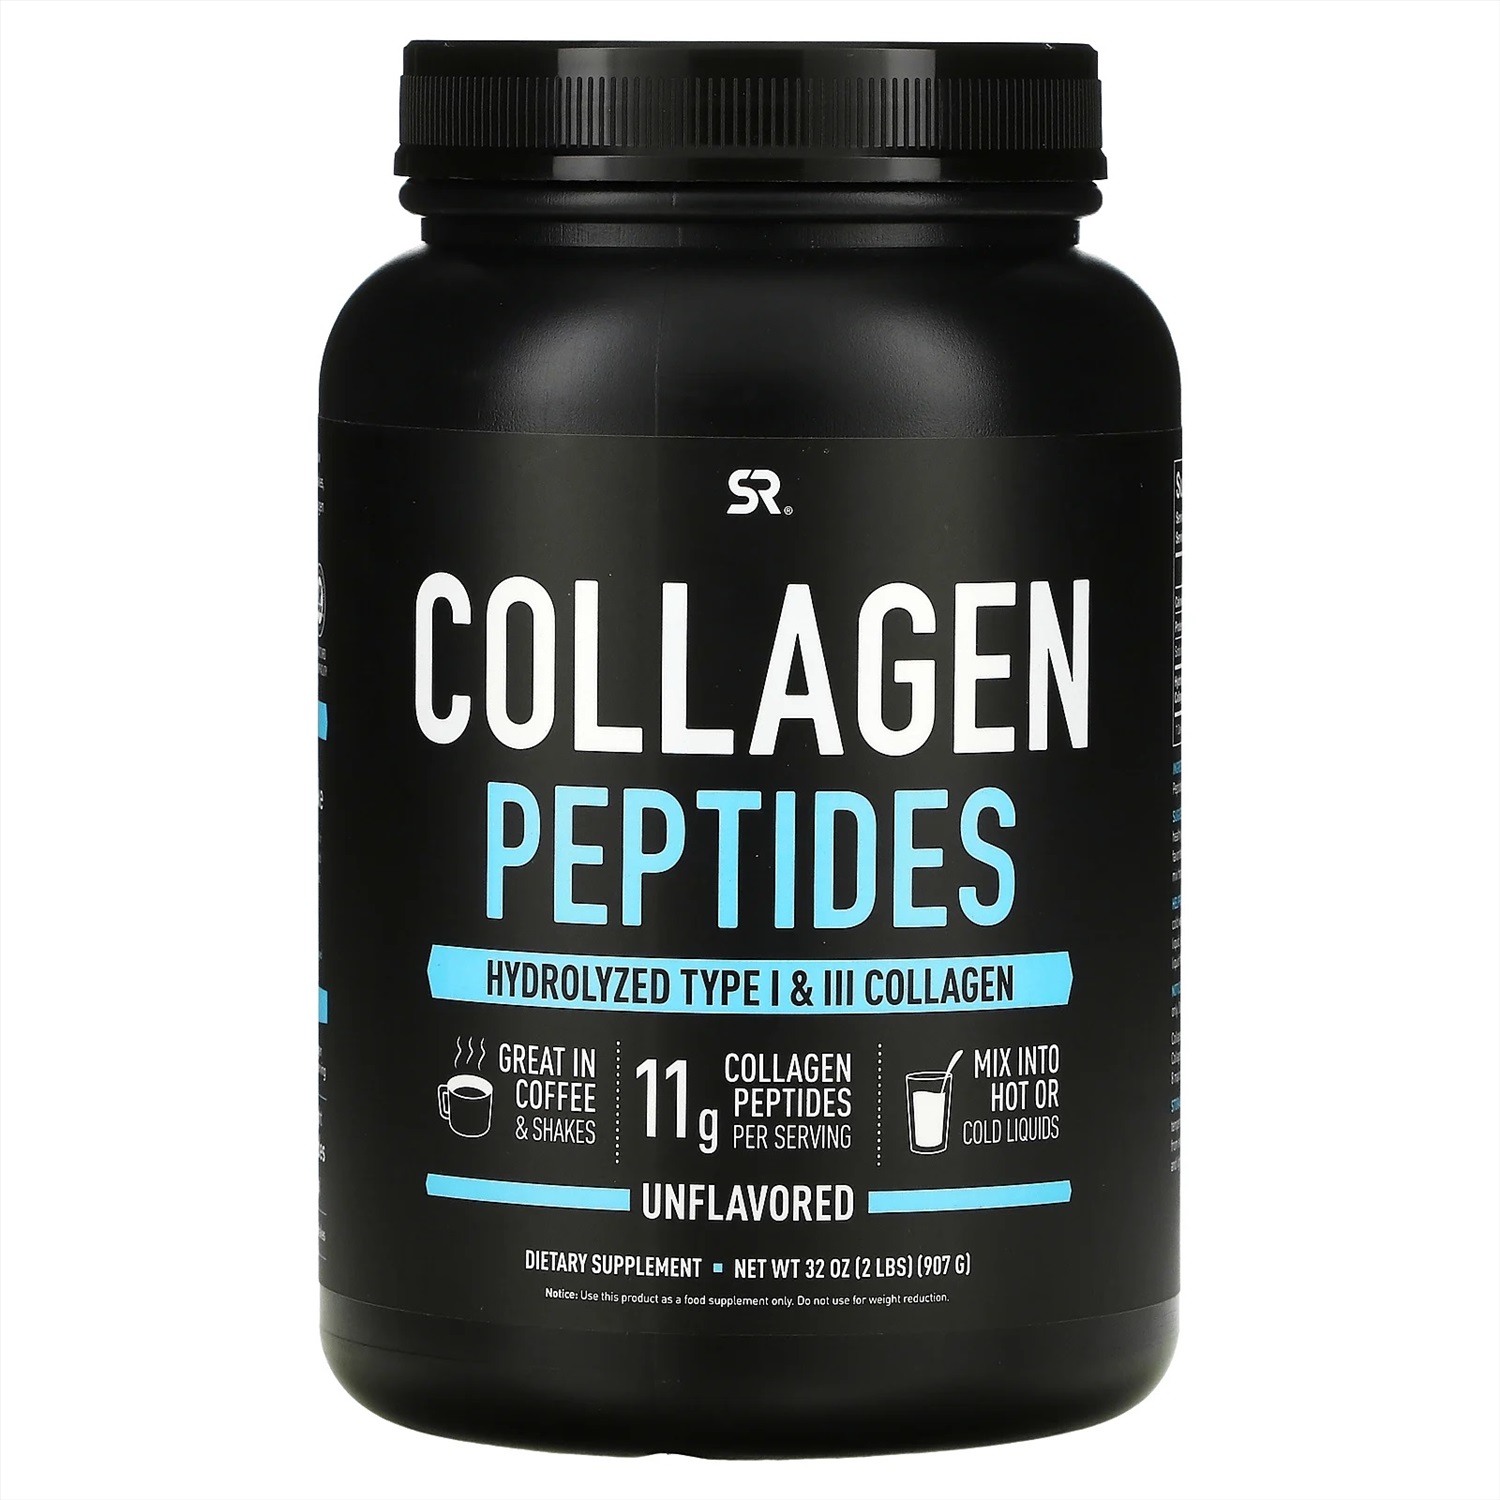 Пептид коллагена цена. Пептиды коллагена Sports research. Коллаген пептидный Sports research. Collagen Peptides, коллаген, Sports research. Collagen Peptides Unflavored 2 Type.